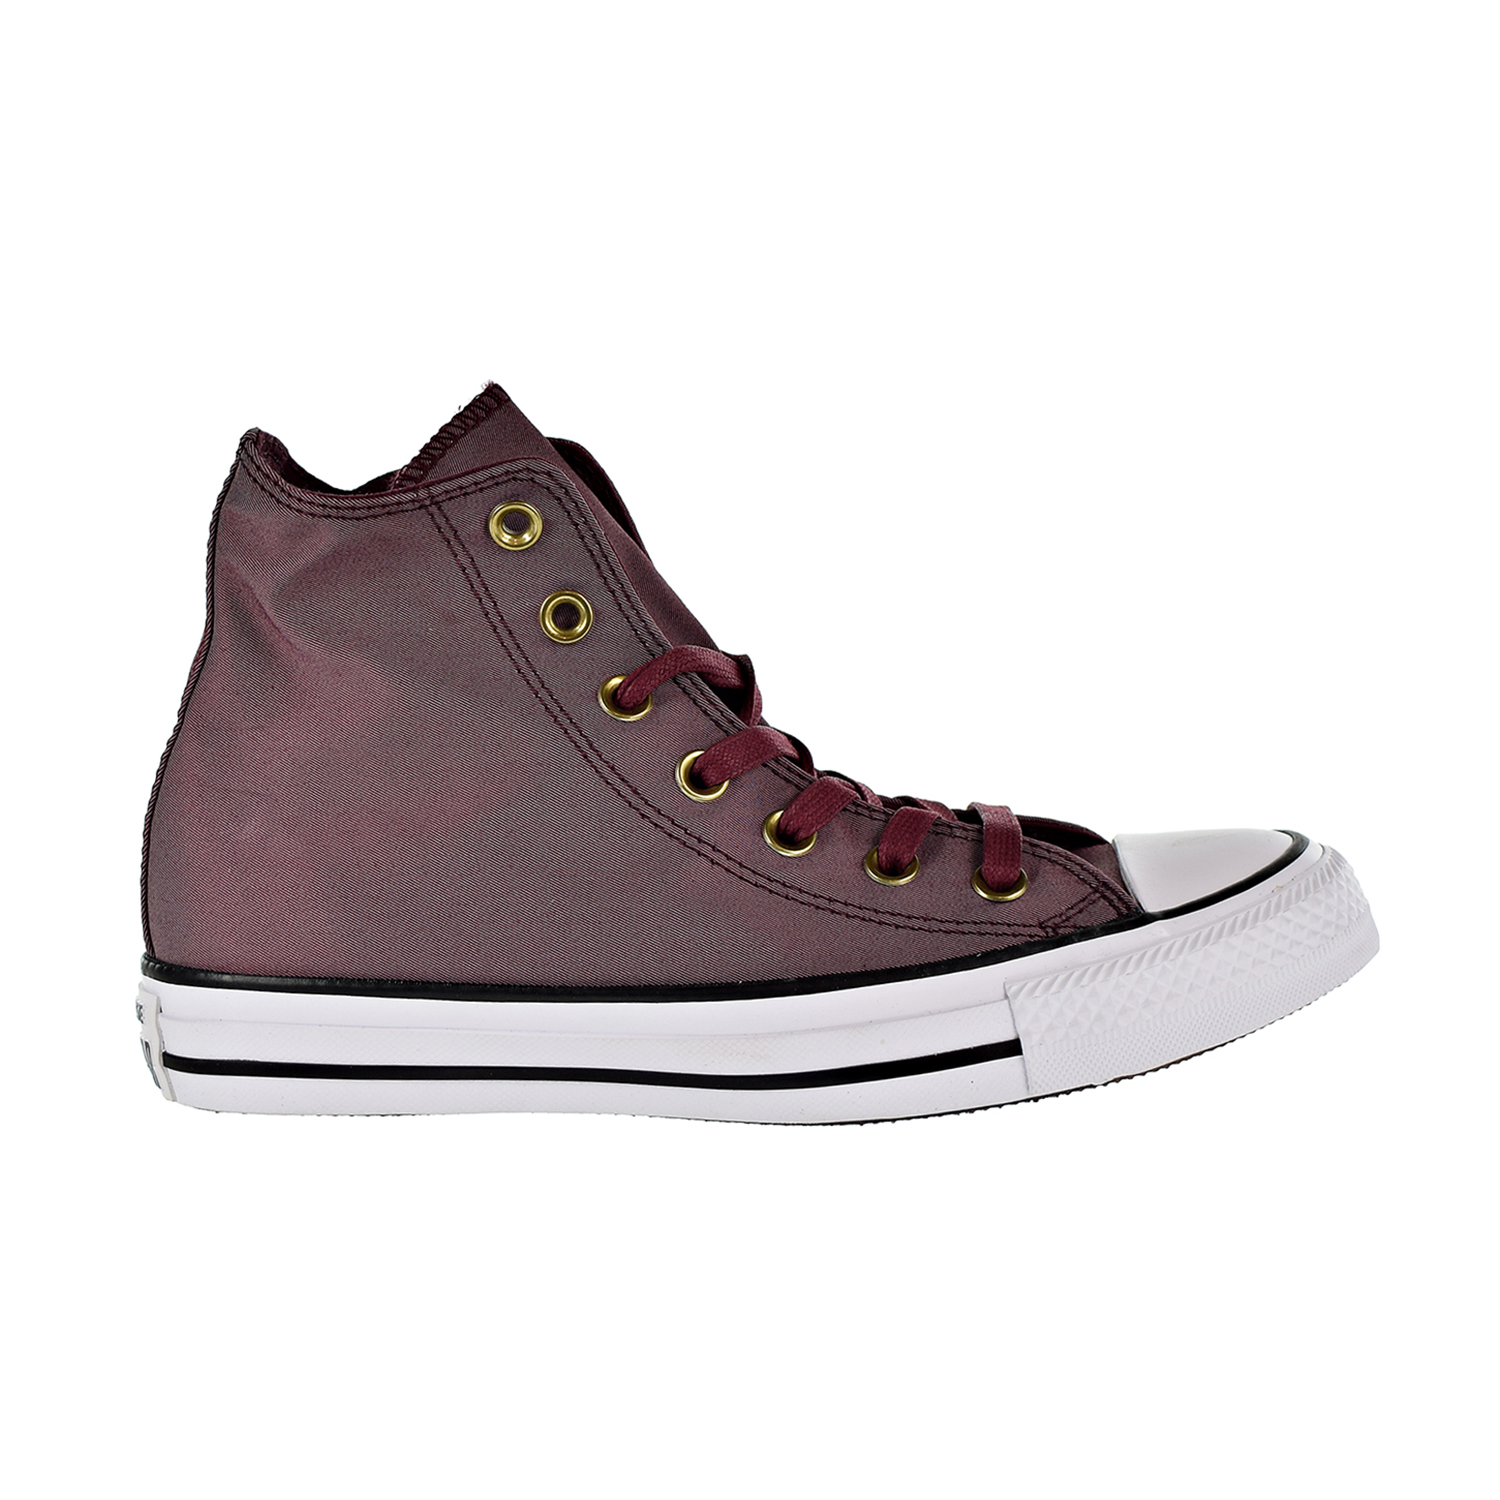 Converse Chuck Taylor All Star Hi Big Kids'-Men's Shoes Deep Bordeaux  155377F | eBay